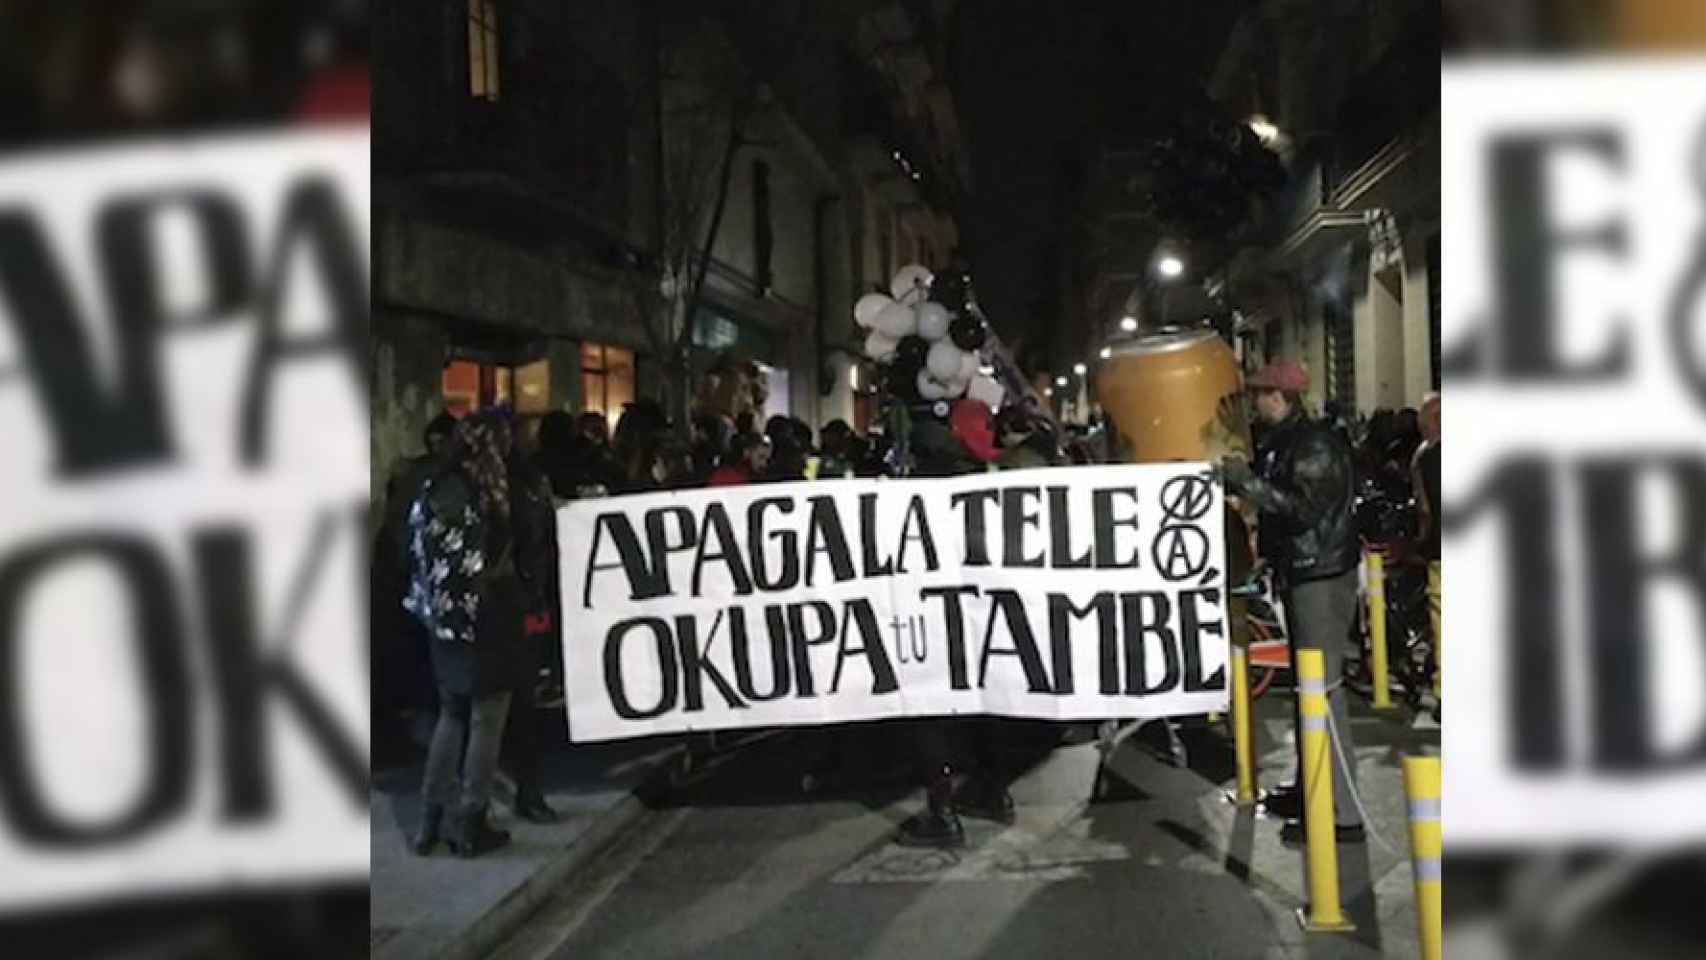 Cabalgata ilegal por las calles de Gràcia contra las restricciones de la pandemia y a favor del movimiento okupa / METRÓPOLI ABIERTA